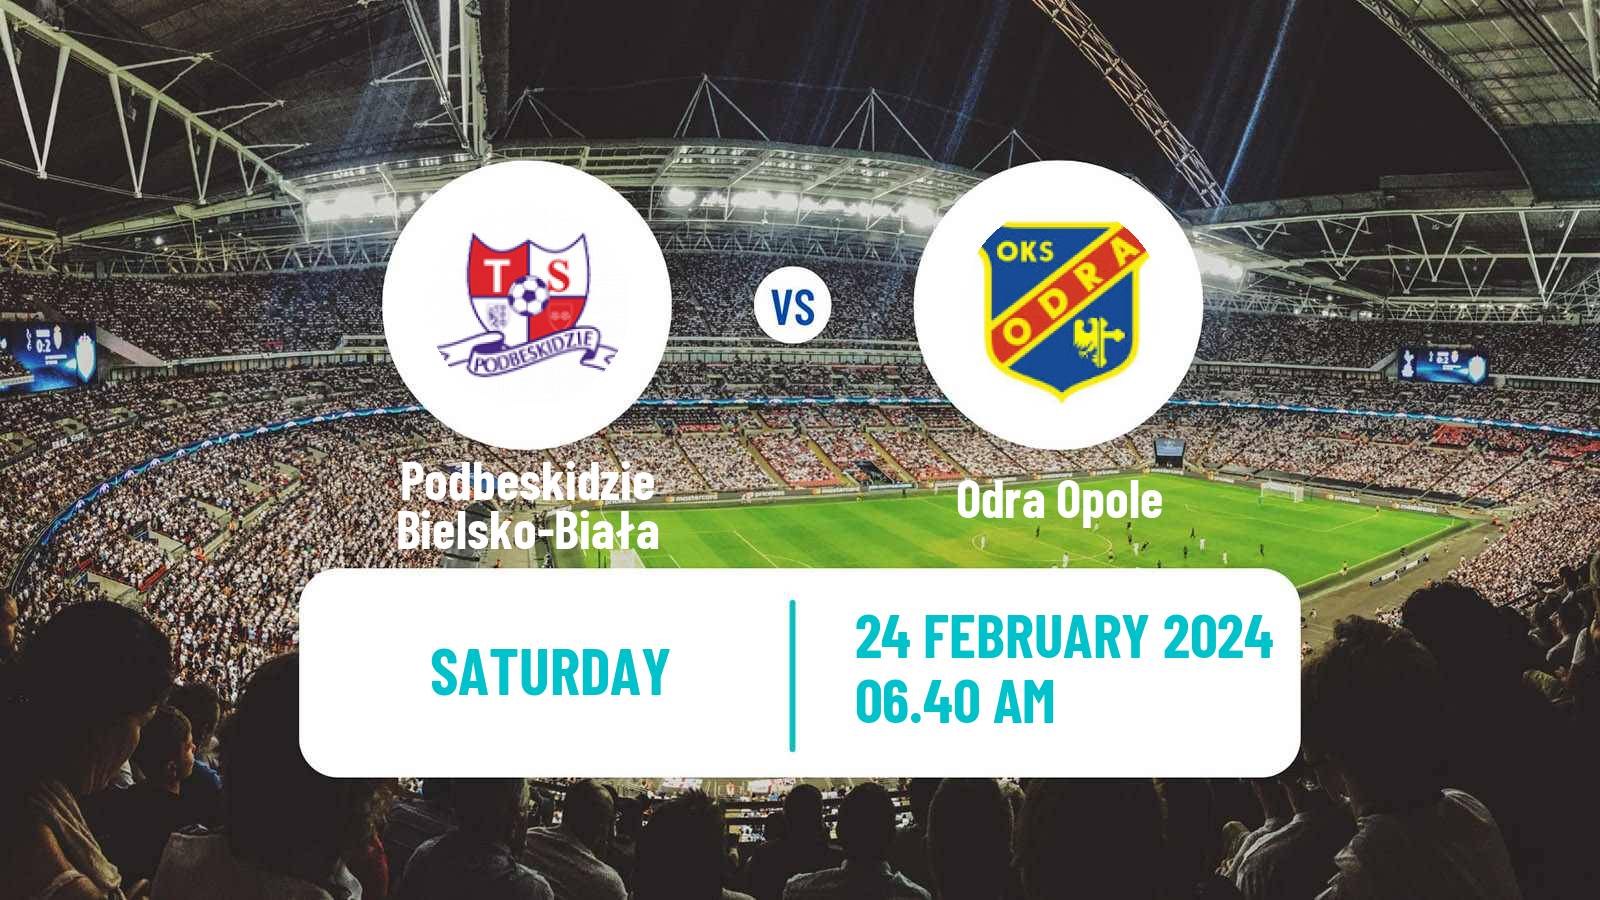 Soccer Polish Division 1 Podbeskidzie Bielsko-Biała - Odra Opole